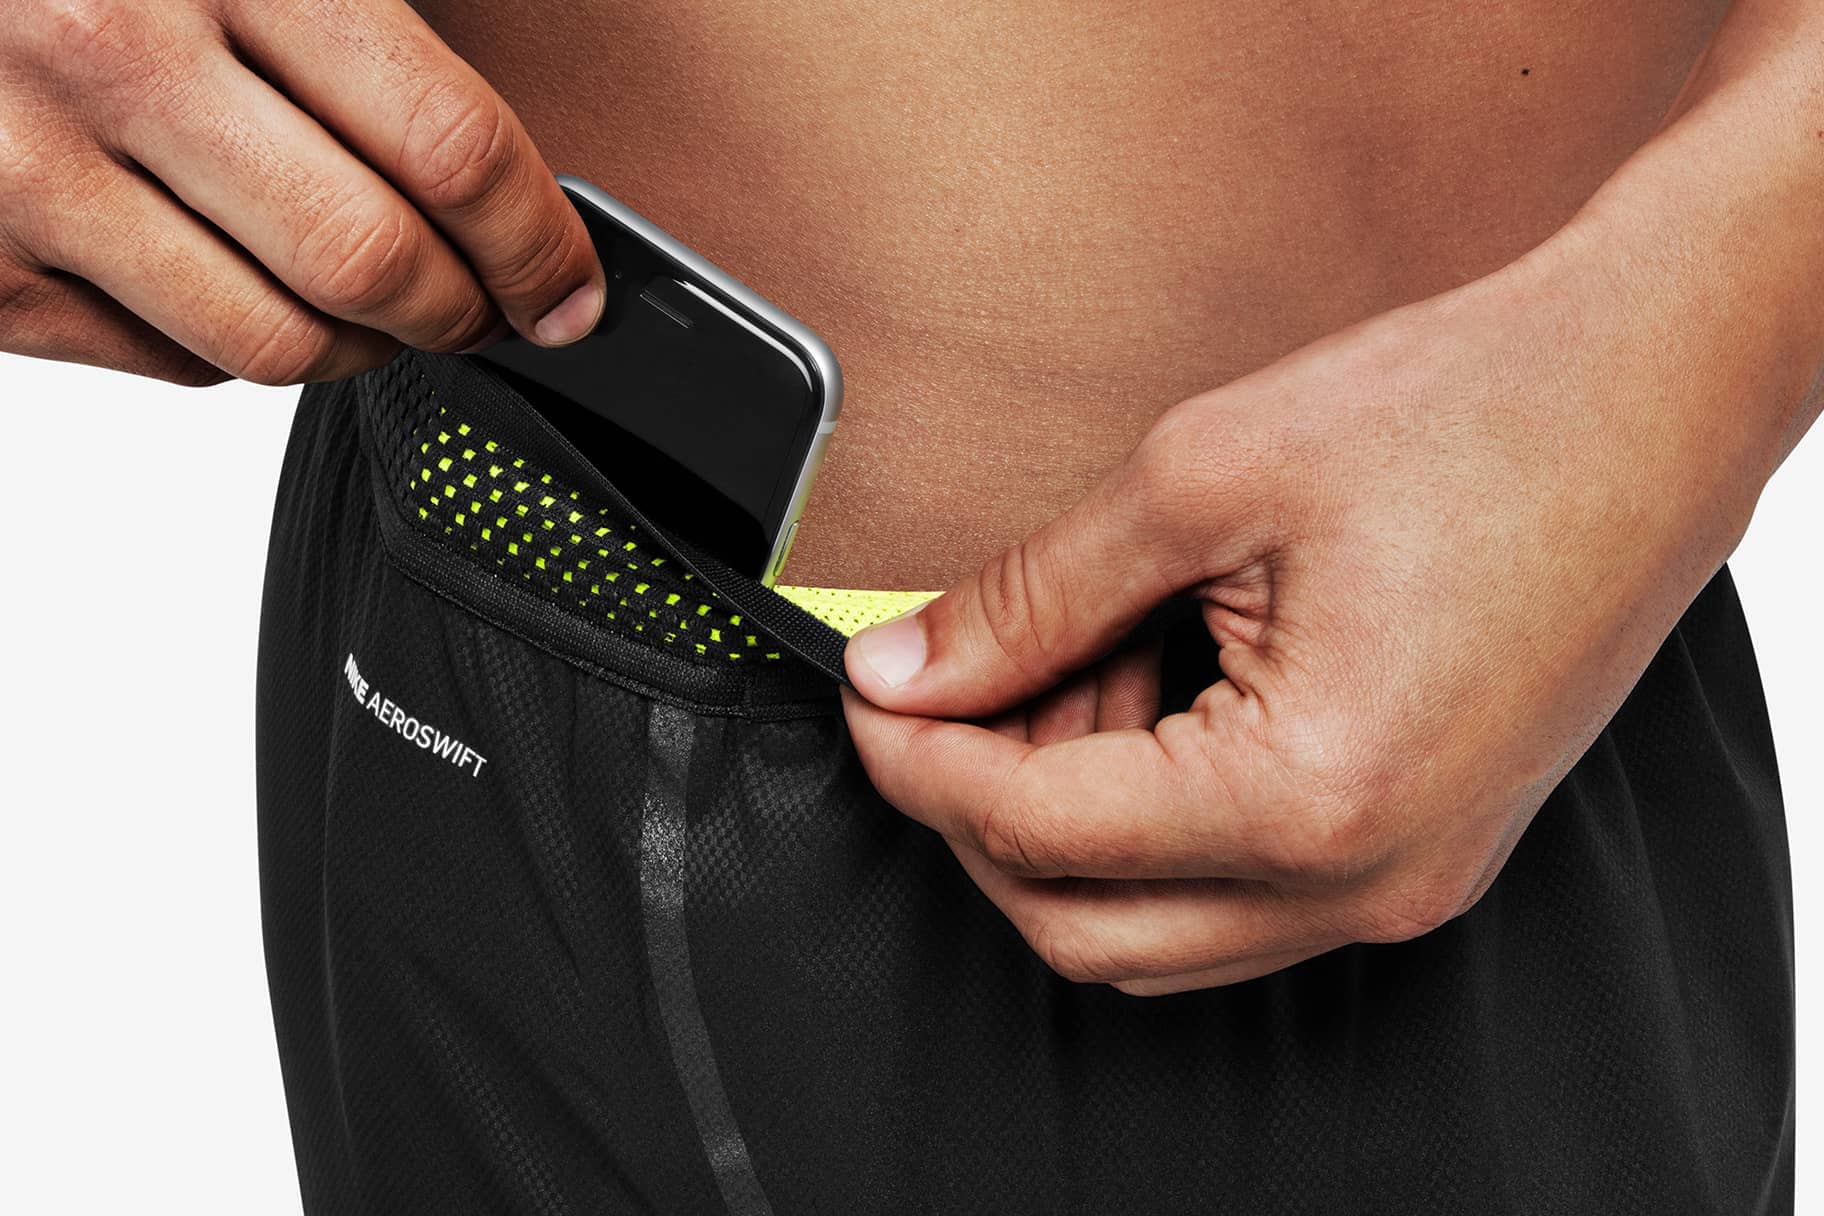 Pantalones para correr bolsillo para el por qué son tan prácticos. Nike